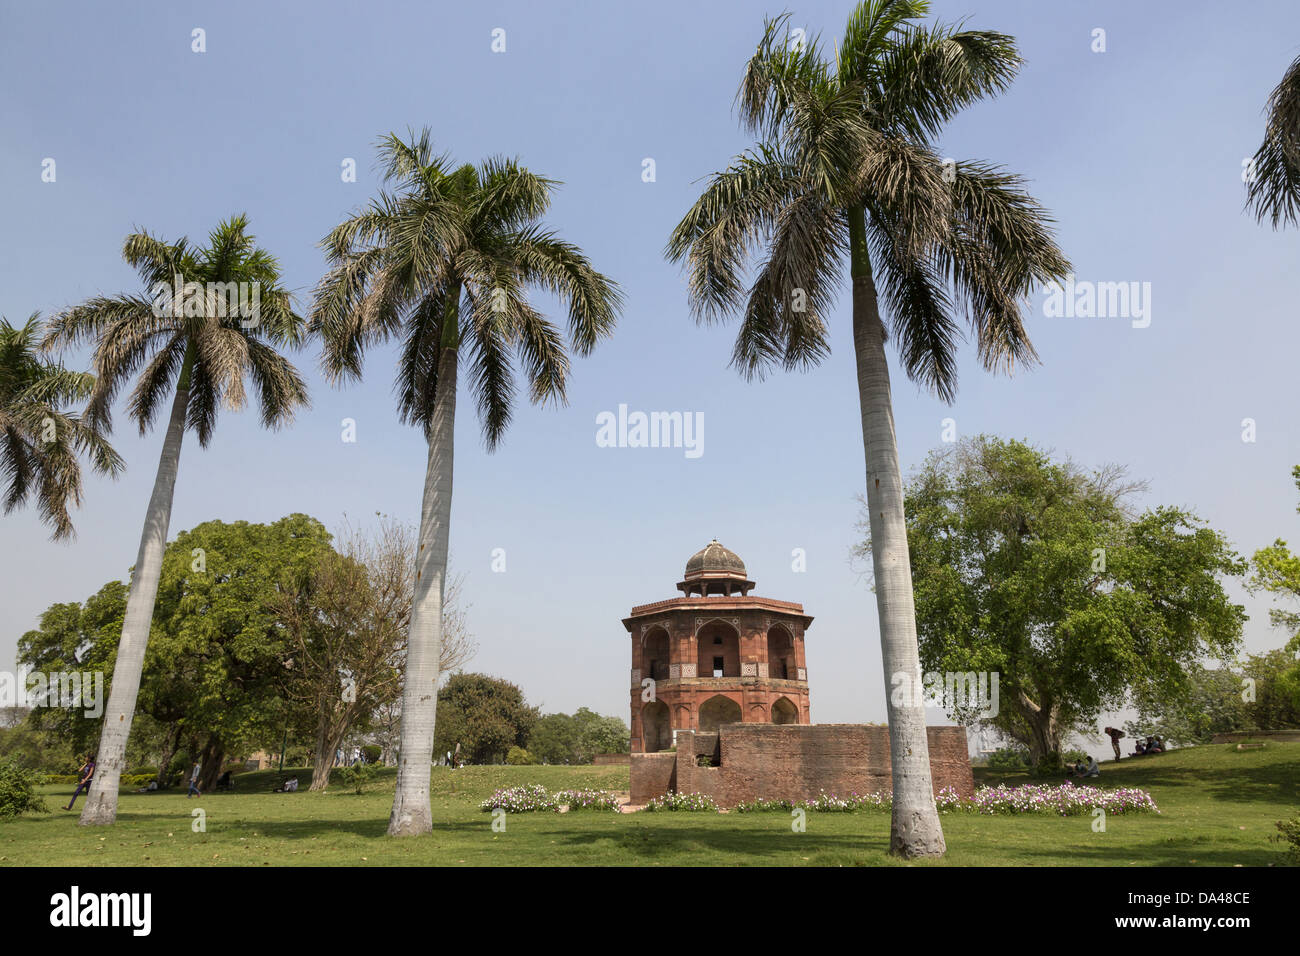 Blick auf Palmen und achteckige Turm aus rotem Sandstein, Sher Mandal, Purana Qila, Delhi, Indien, März Stockfoto